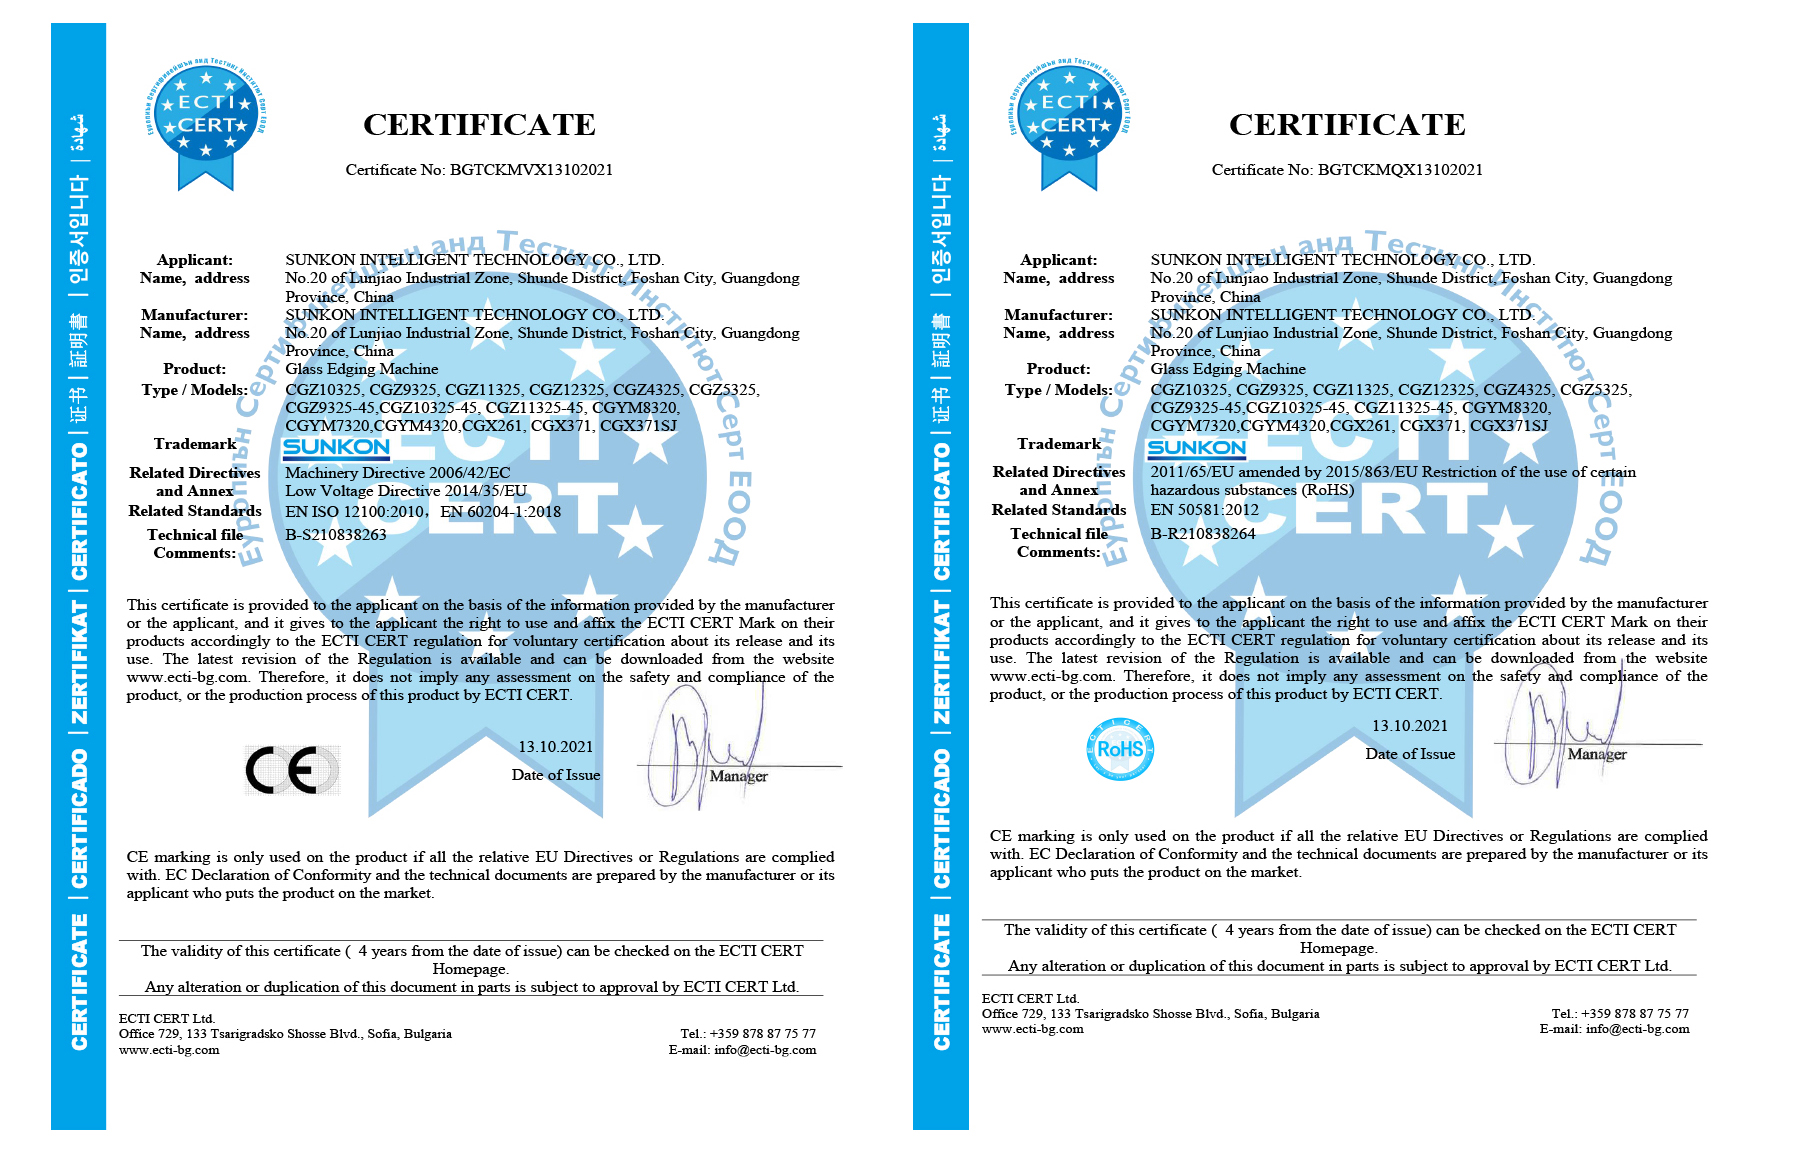 Şüşə emalı maşınları üçün CE sertifikatı